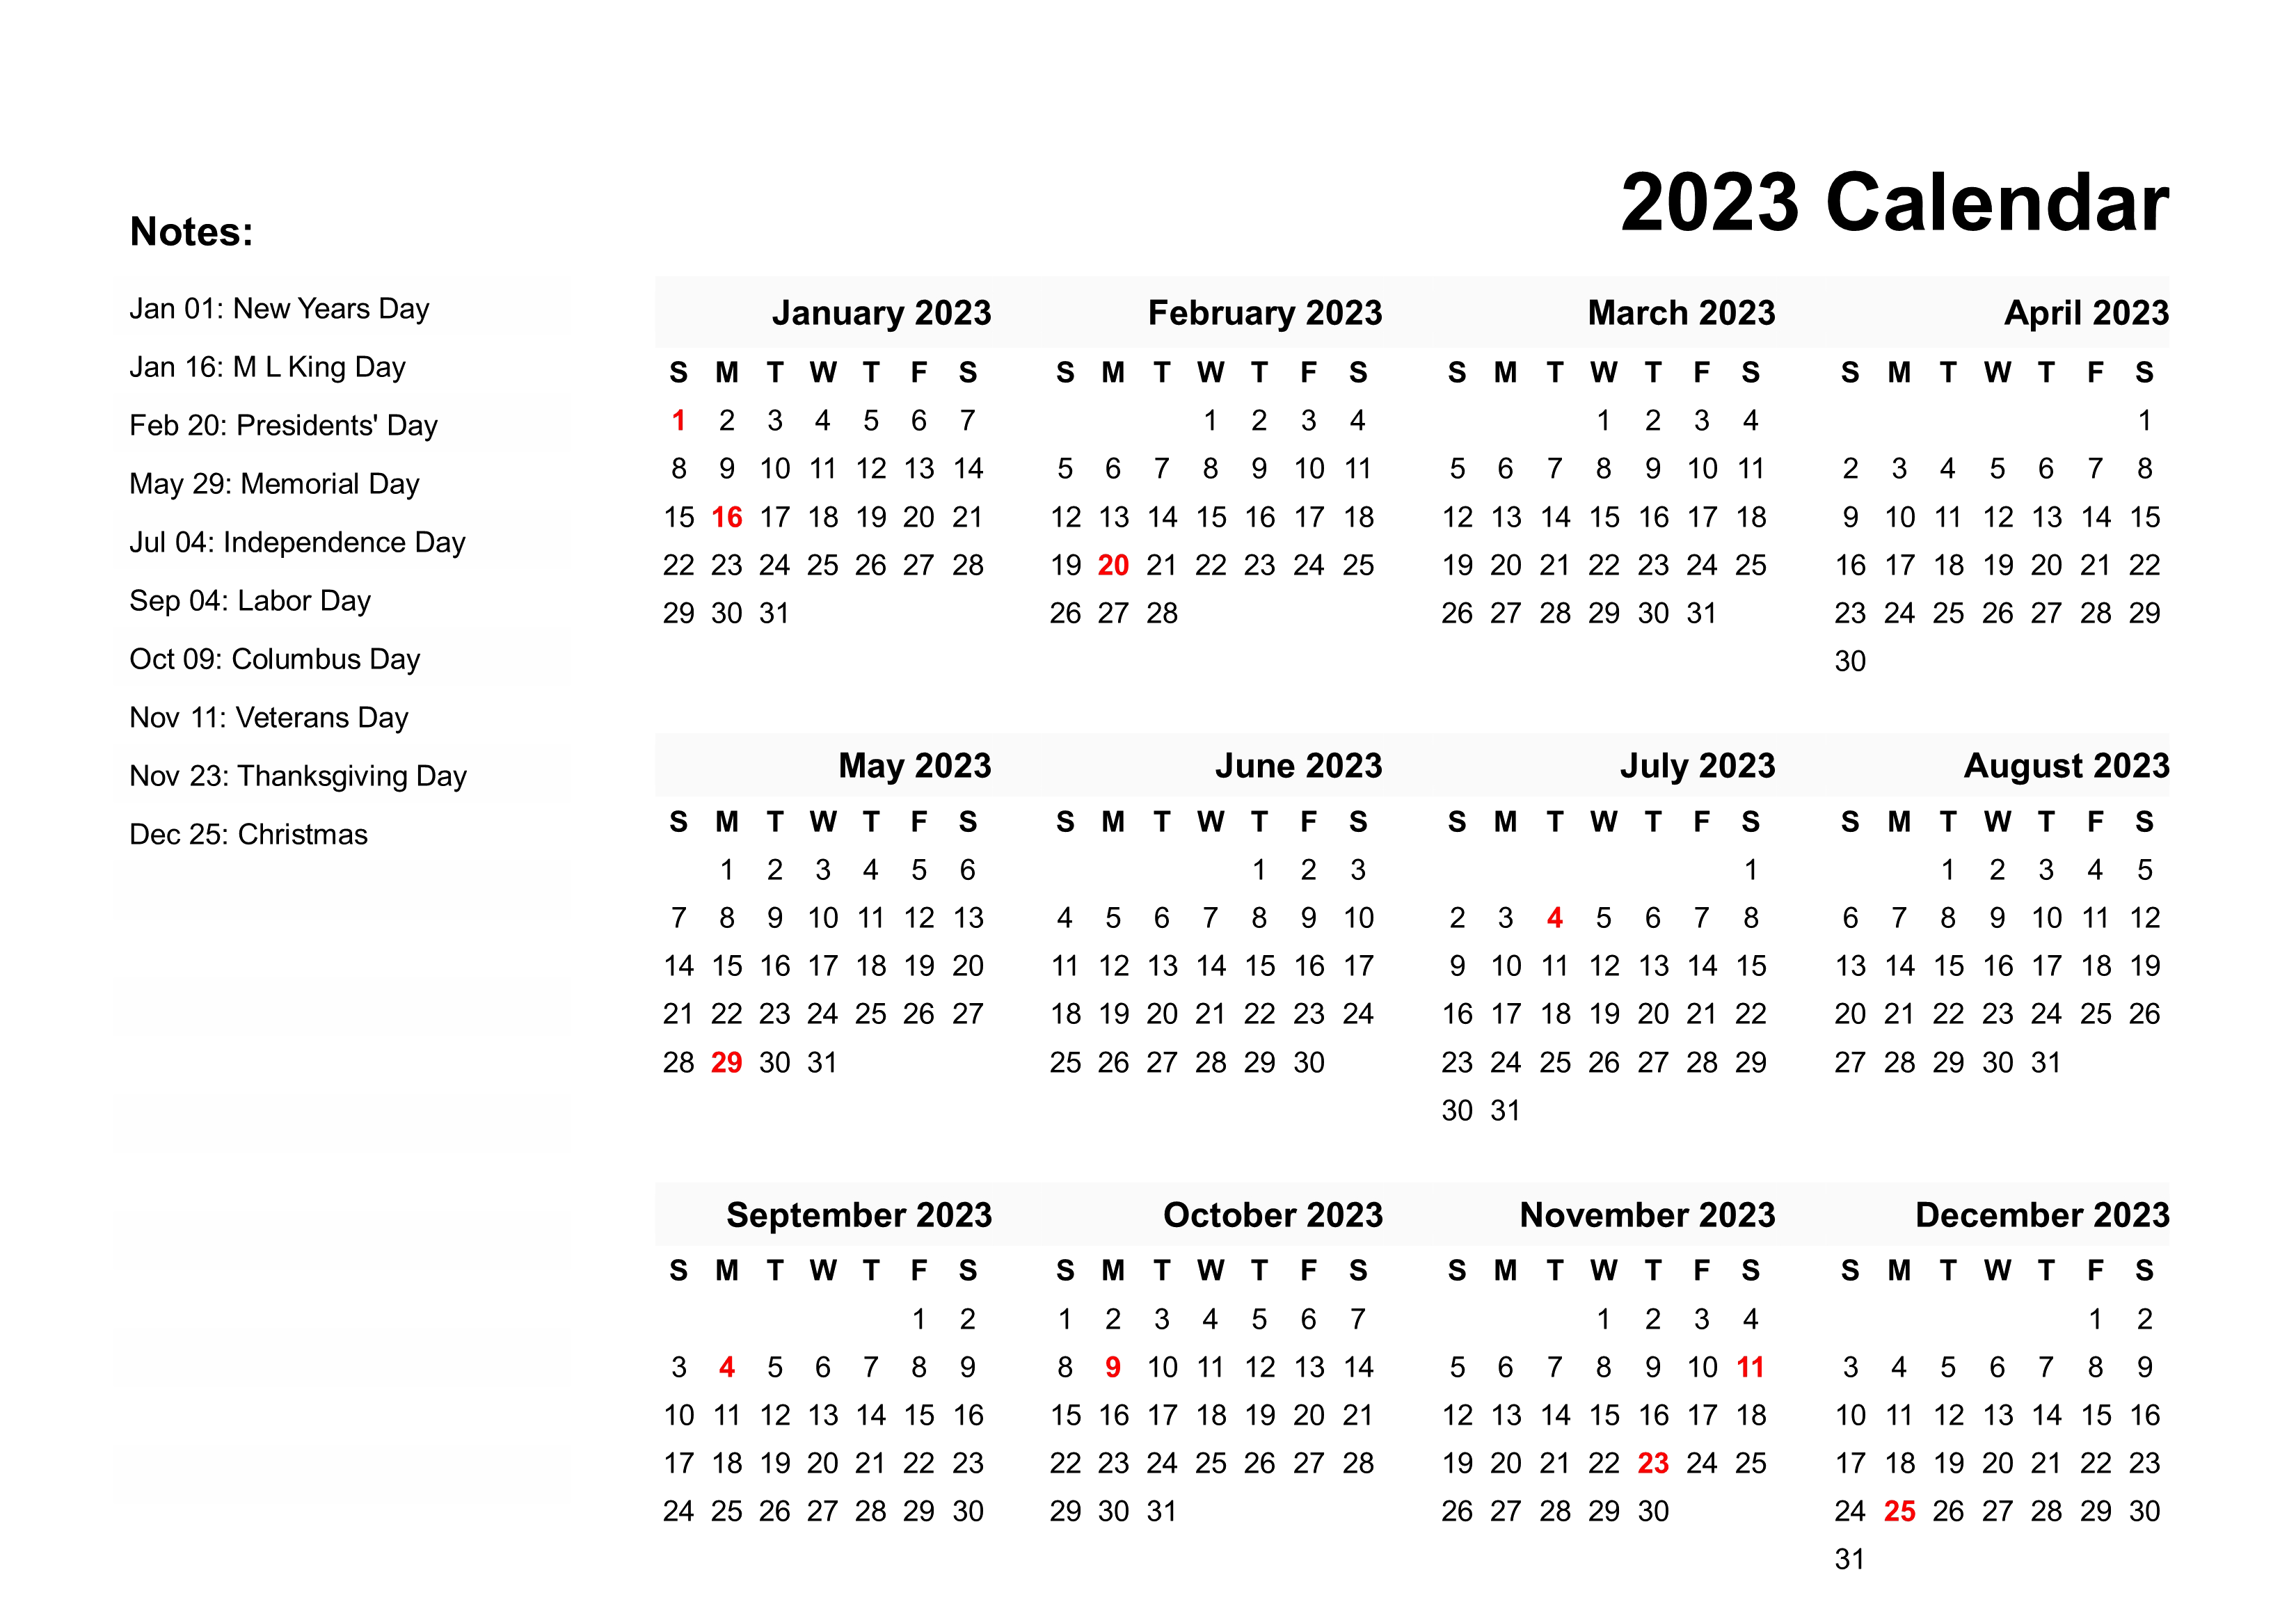 Calendar 2023 With Holidays pngteam.com